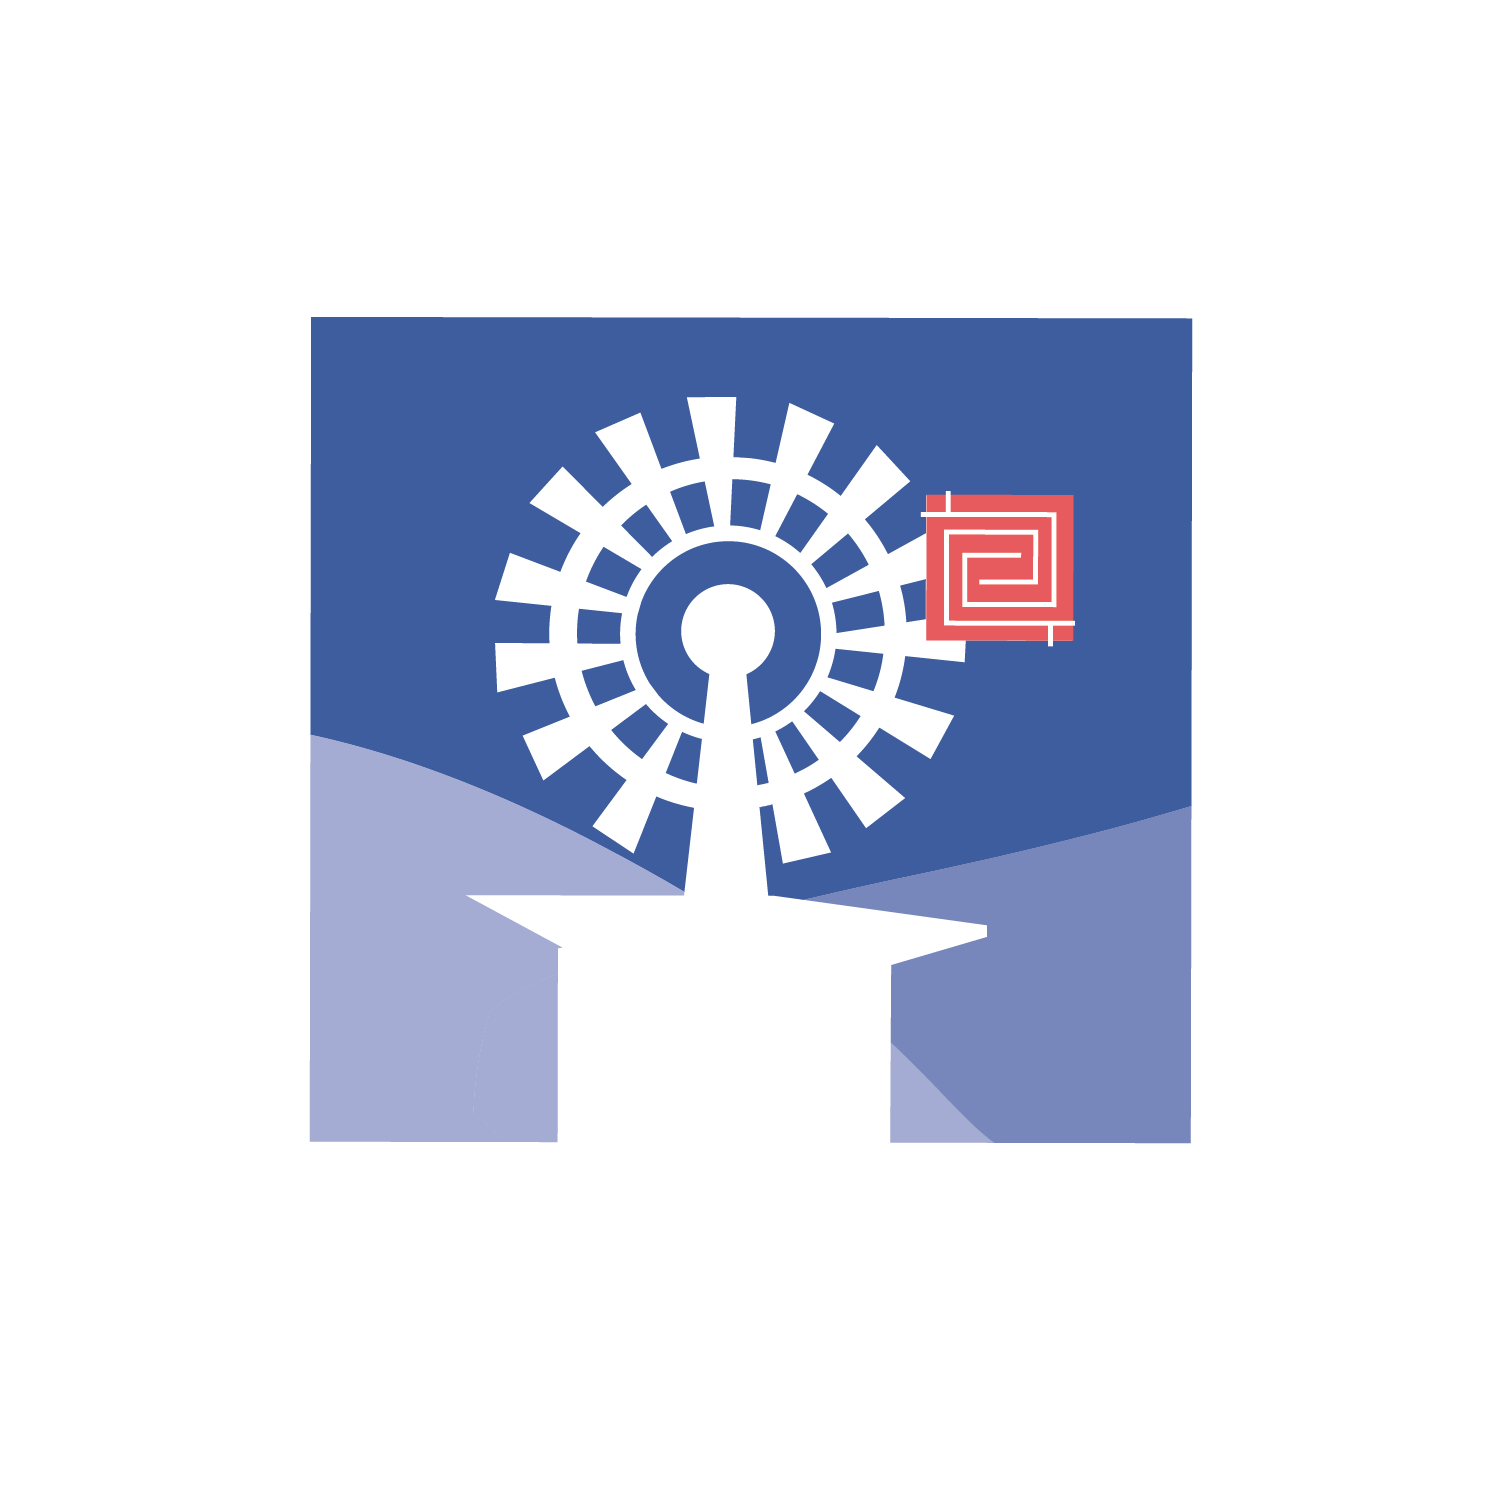 windmill logo